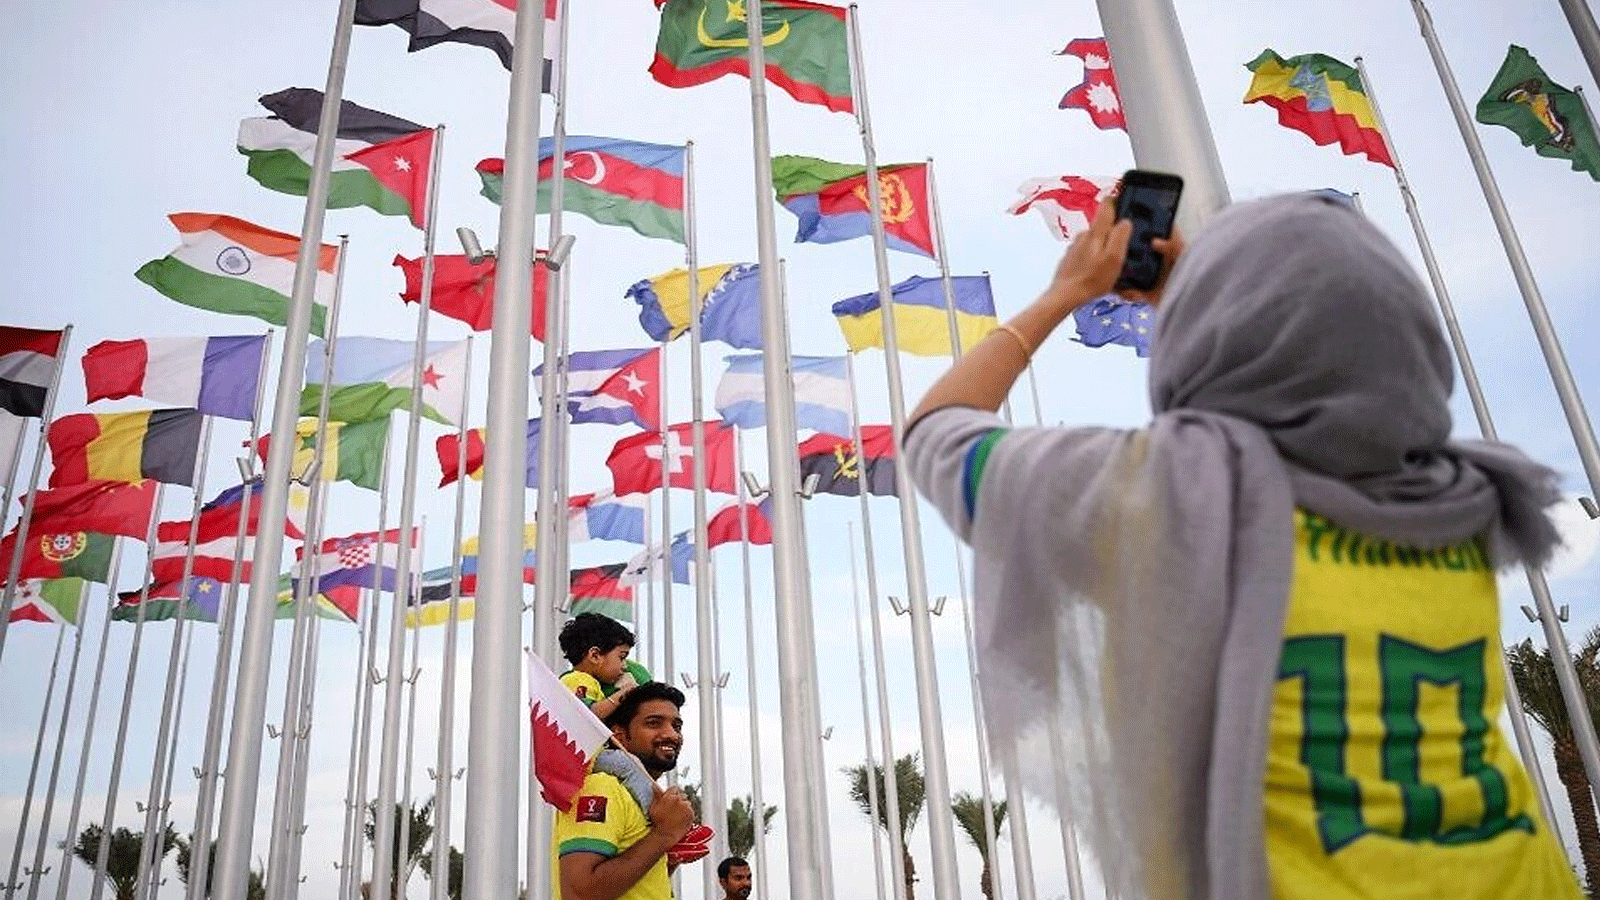 لقطة من شوارع قطر المزدانة بأعلام الدول المشاركة